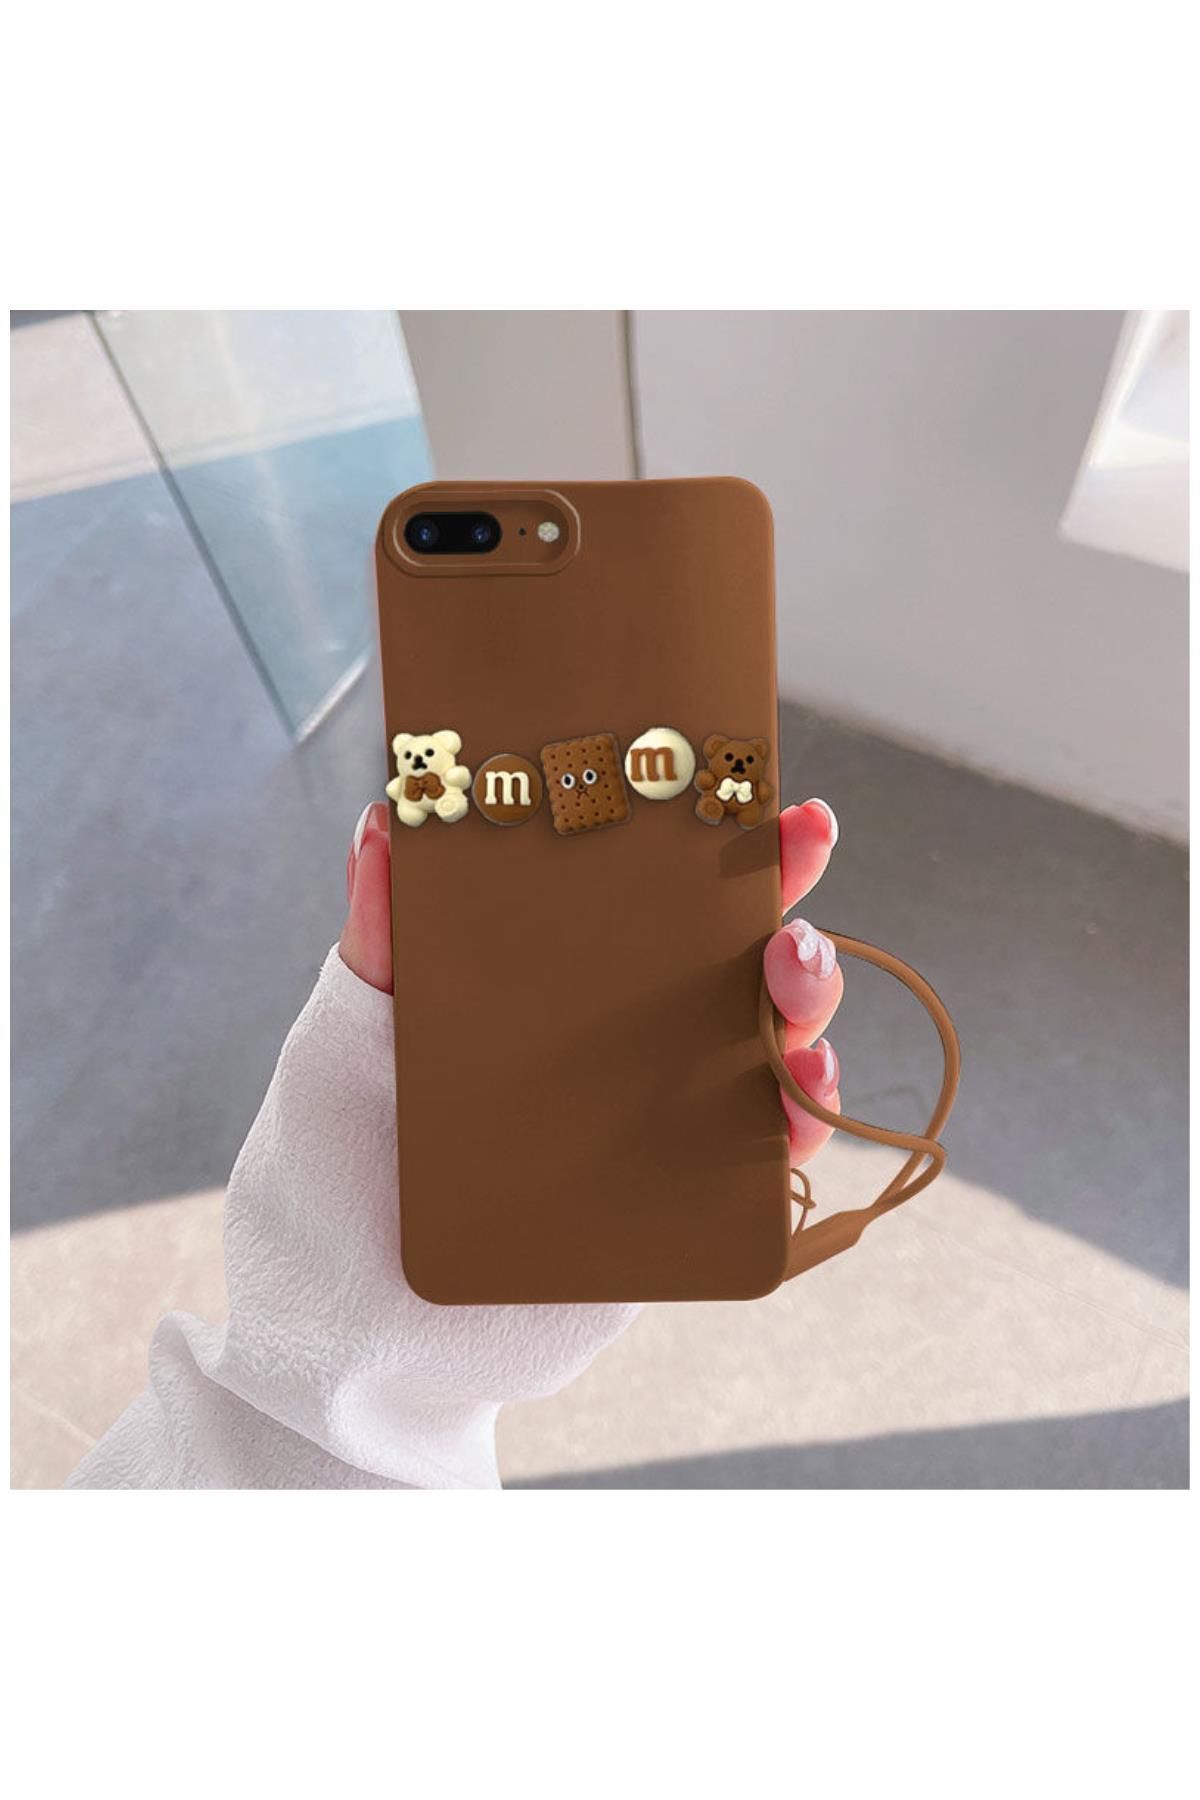 Zebana Apple iPhone 8 Plus Uyumlu Kılıf Zebana Love Bear Silikon Kılıf Kahverengi